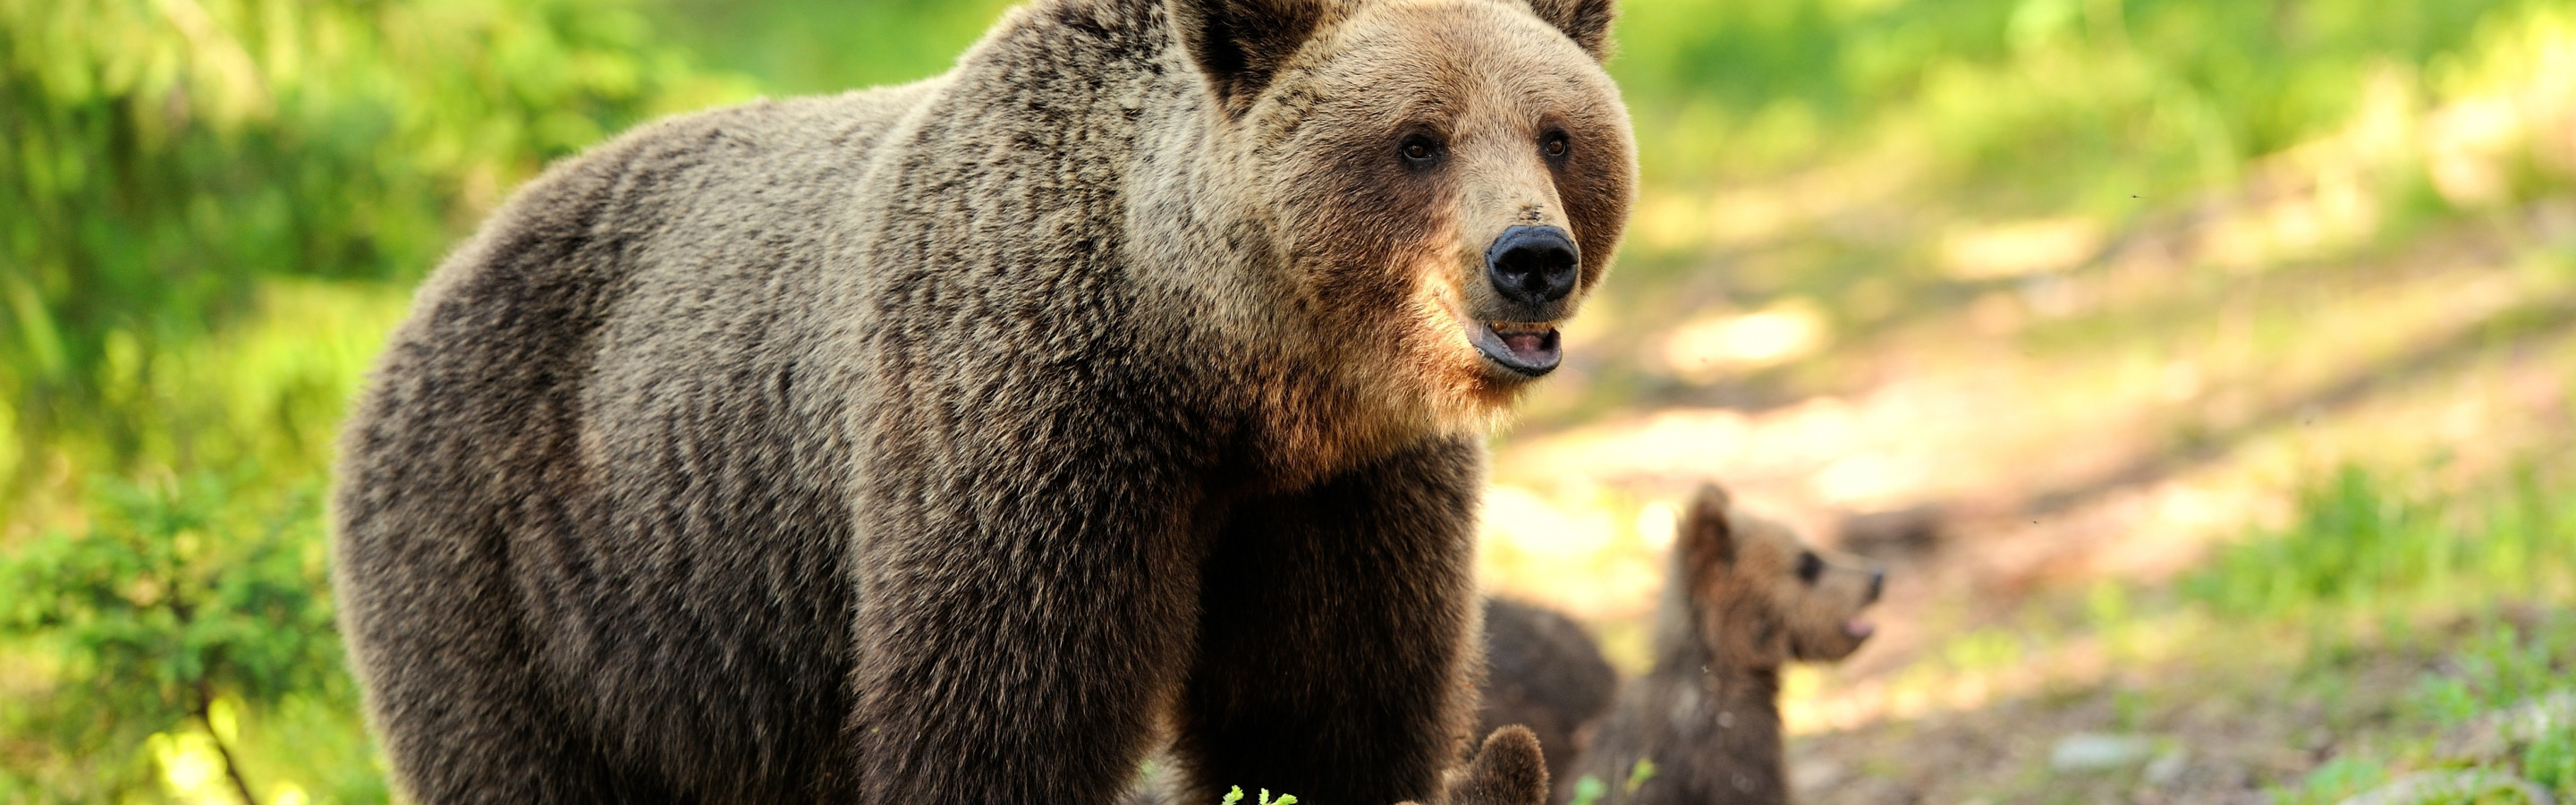 Собака вывела из леса медведей. Фото на рабочий стол медведь в лесу с ягодами. Лен белый медведь в лесу 150 см, Беларусь. Очень широкие картинки красивые природа и животные.